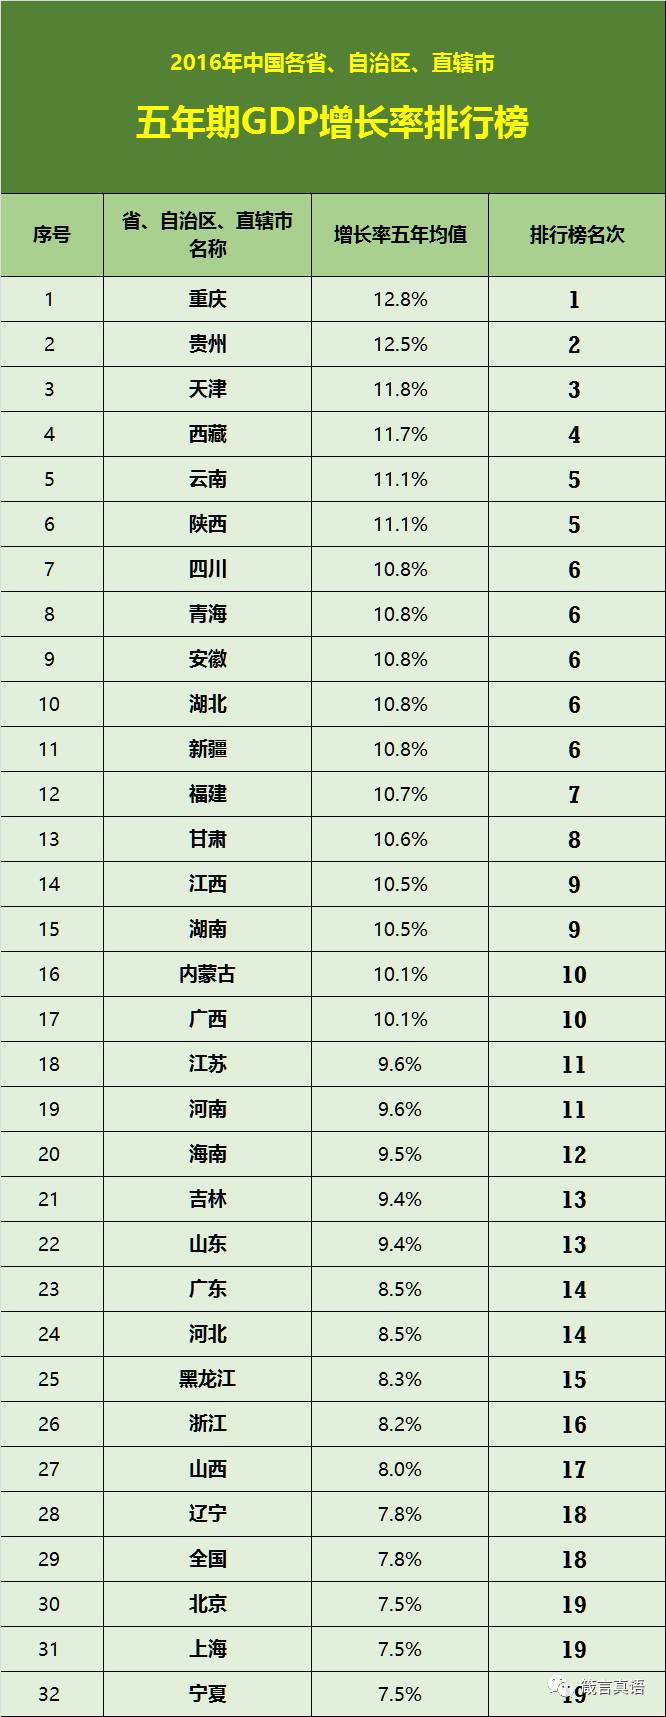 中国各省、自治区及直辖市竞争力排行榜